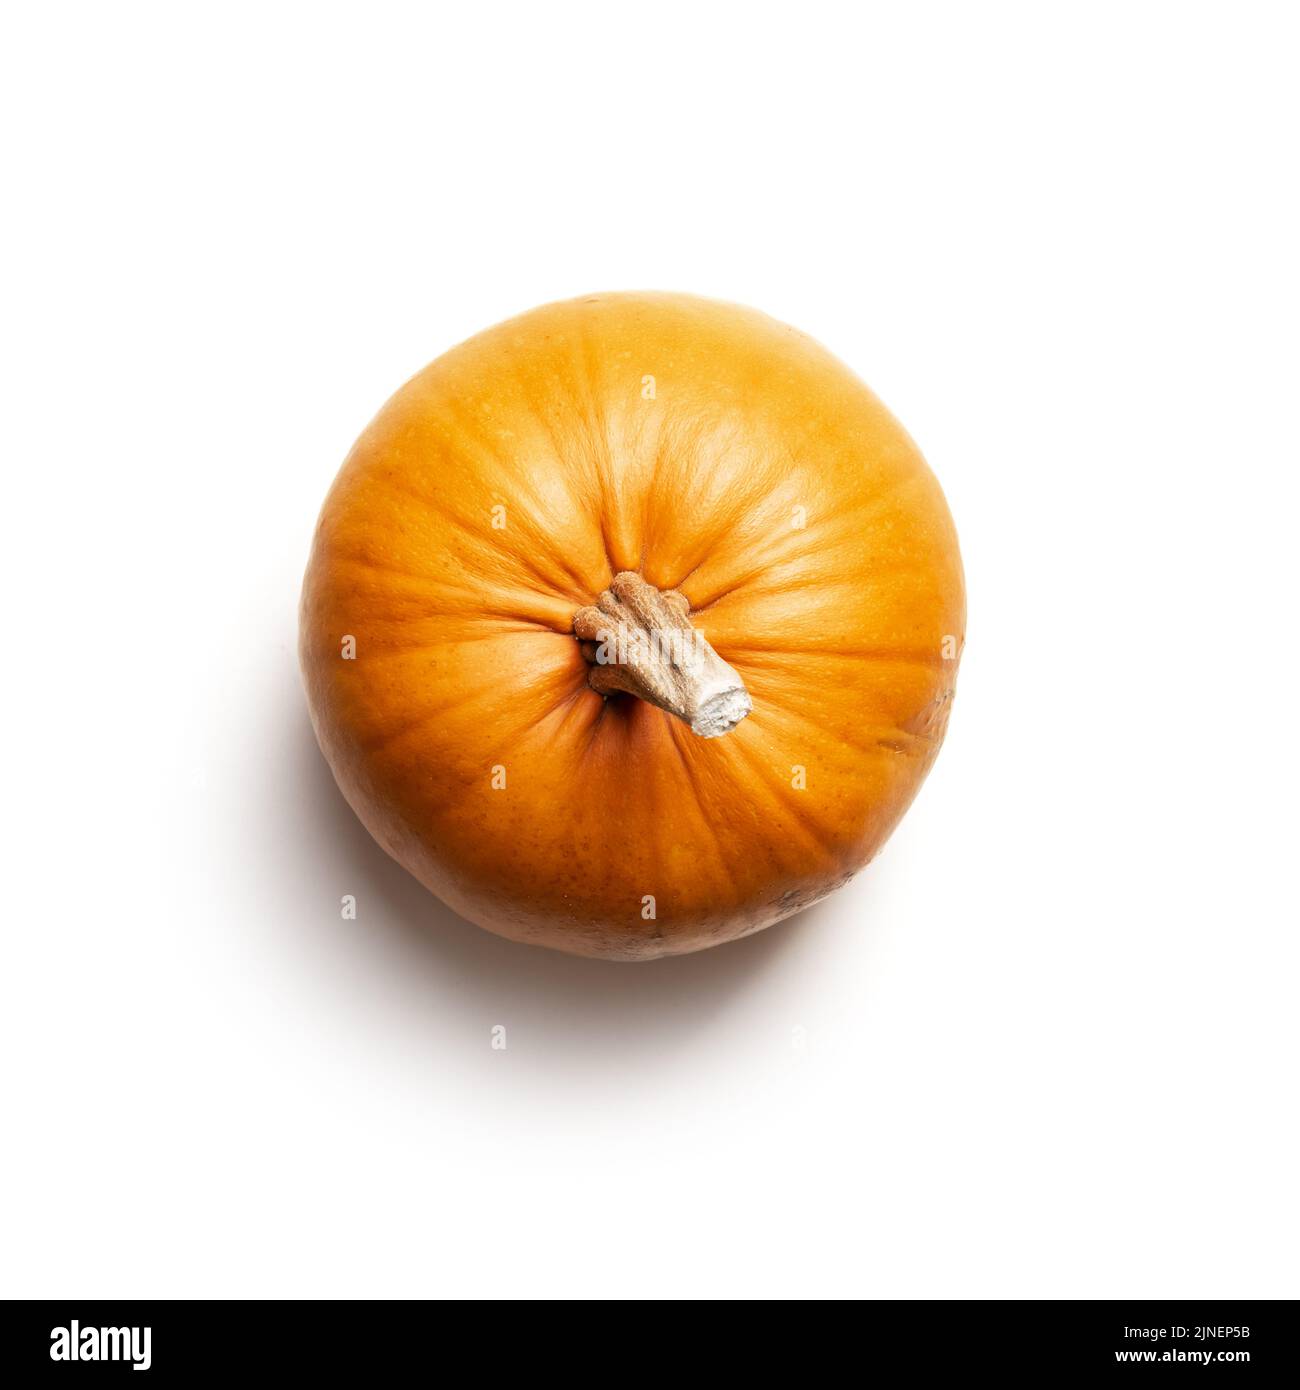 Zucca arancione isolata su sfondo bianco. Fotografia di cibo. Concetto di Halloween. Vista dall'alto. Parte di set diversi tipi di zucche. Foto Stock